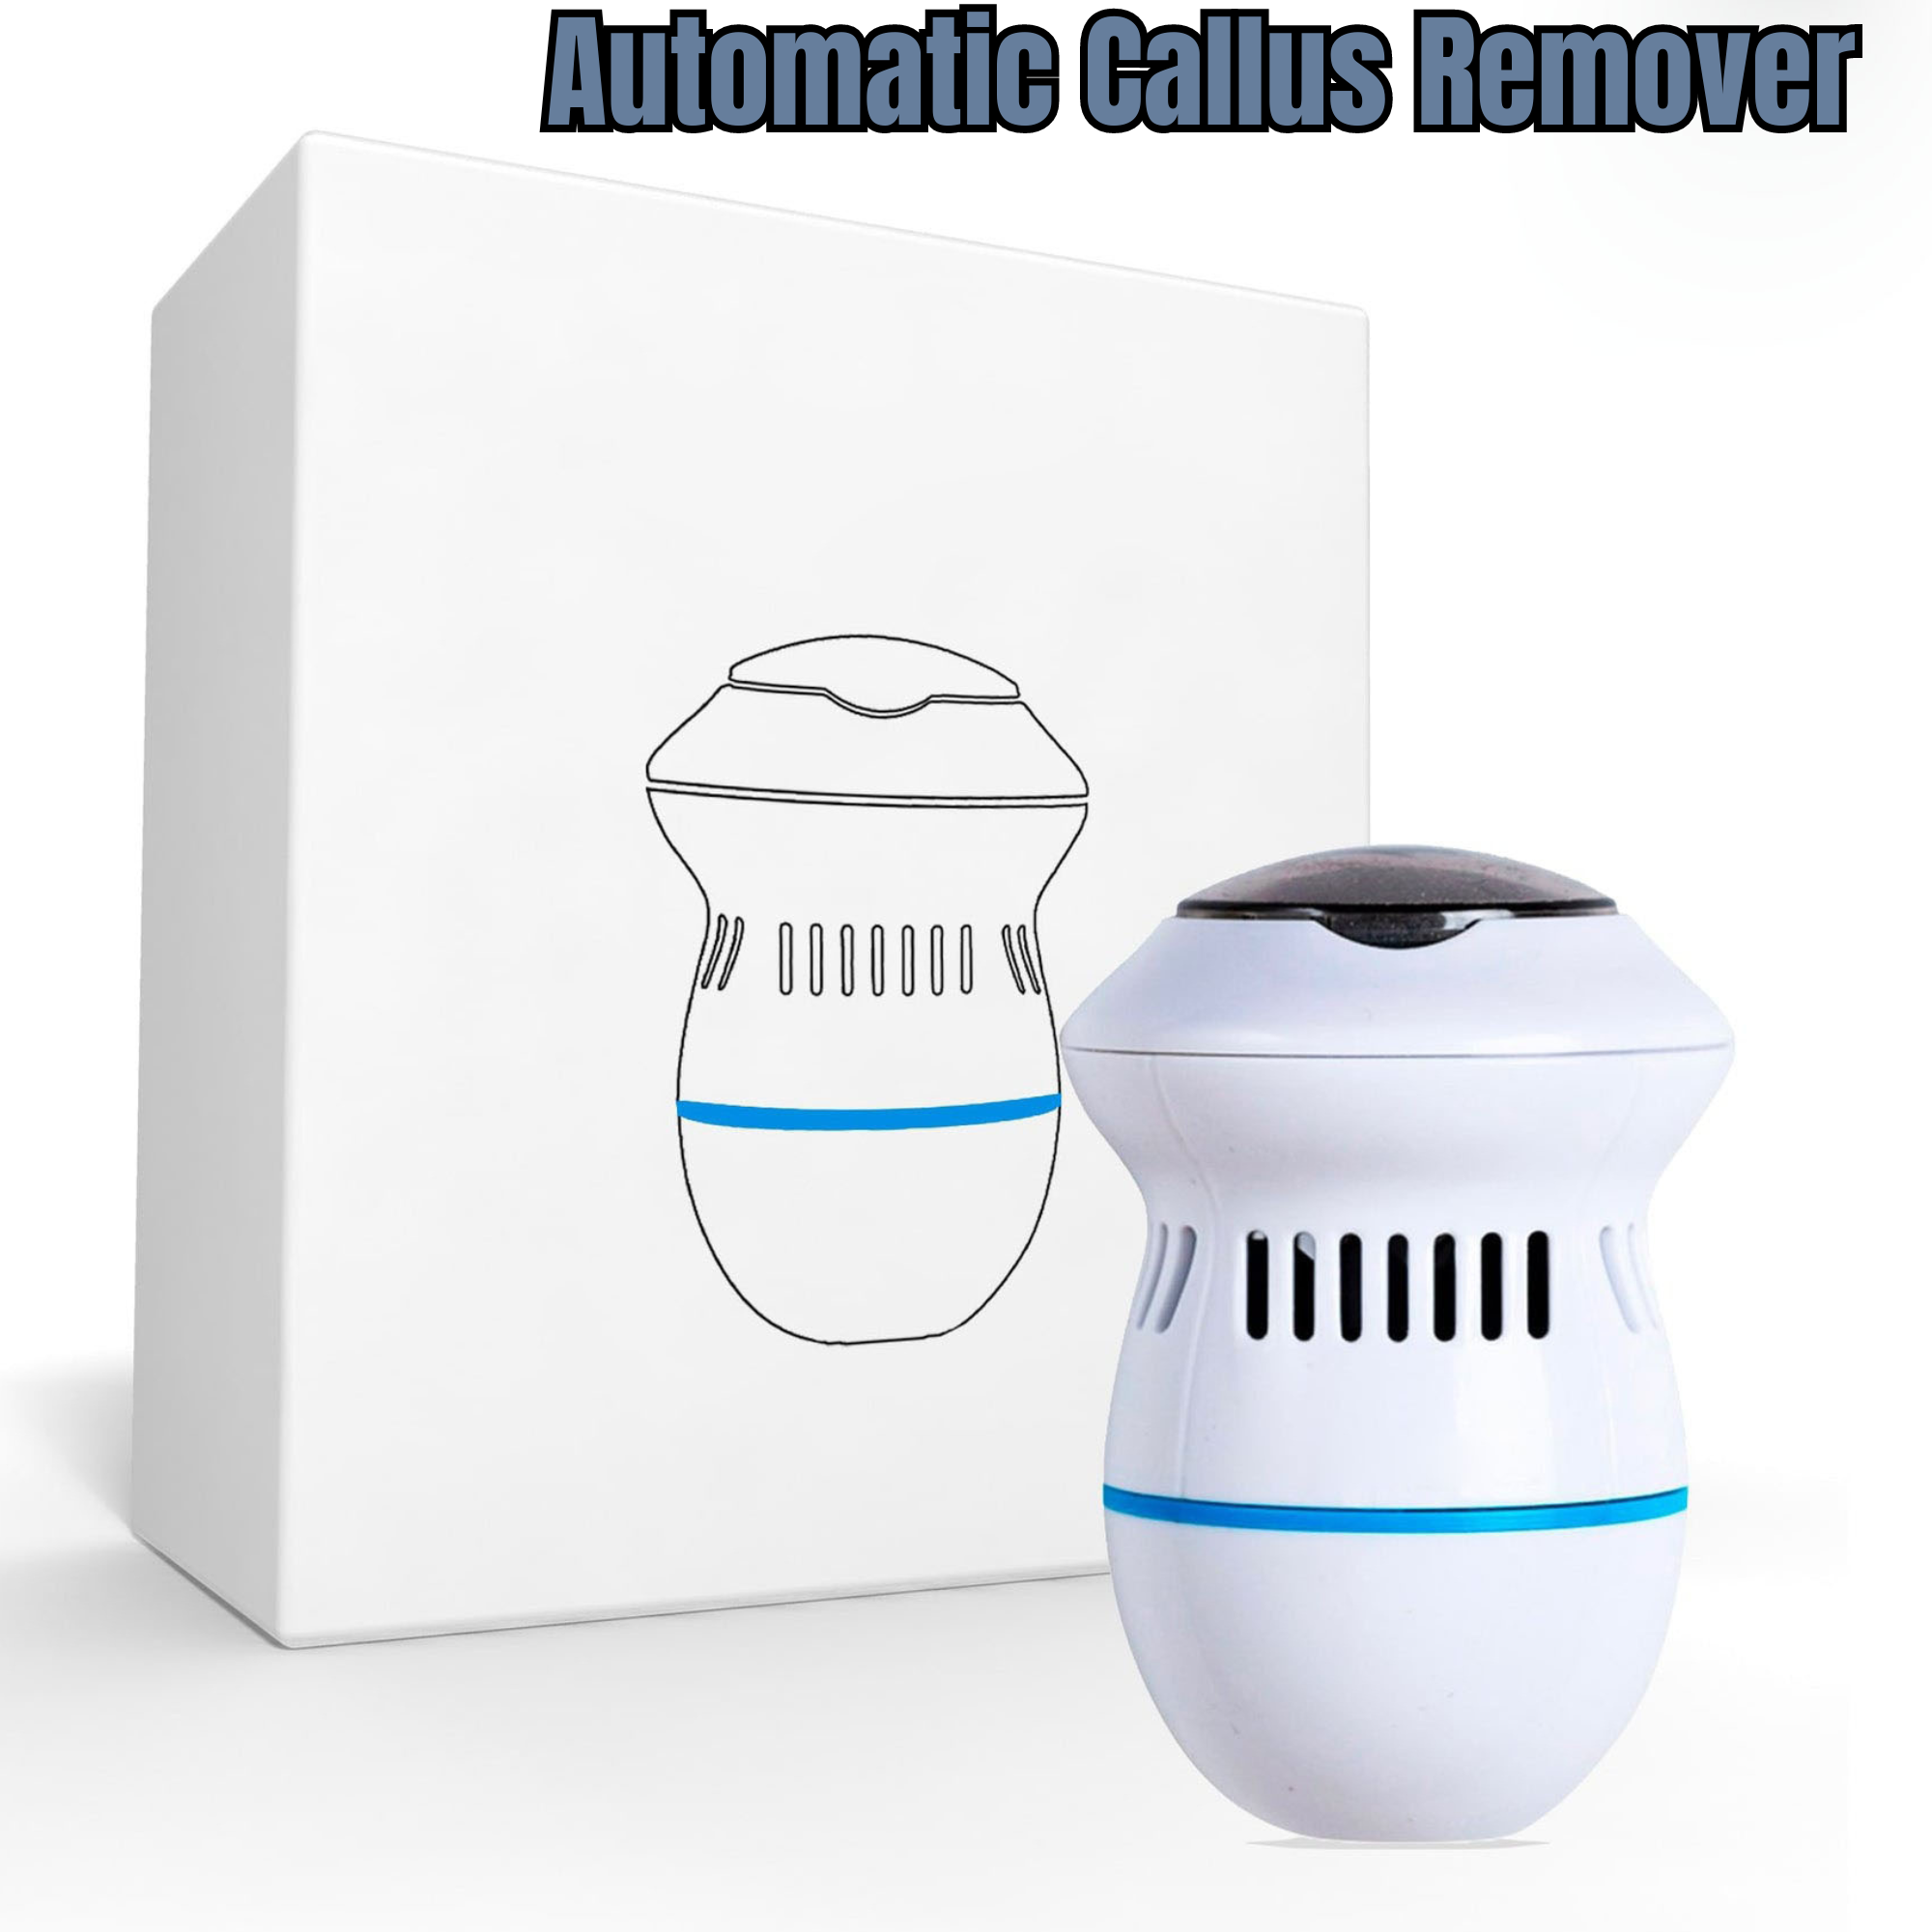 Automatic Callus Remover